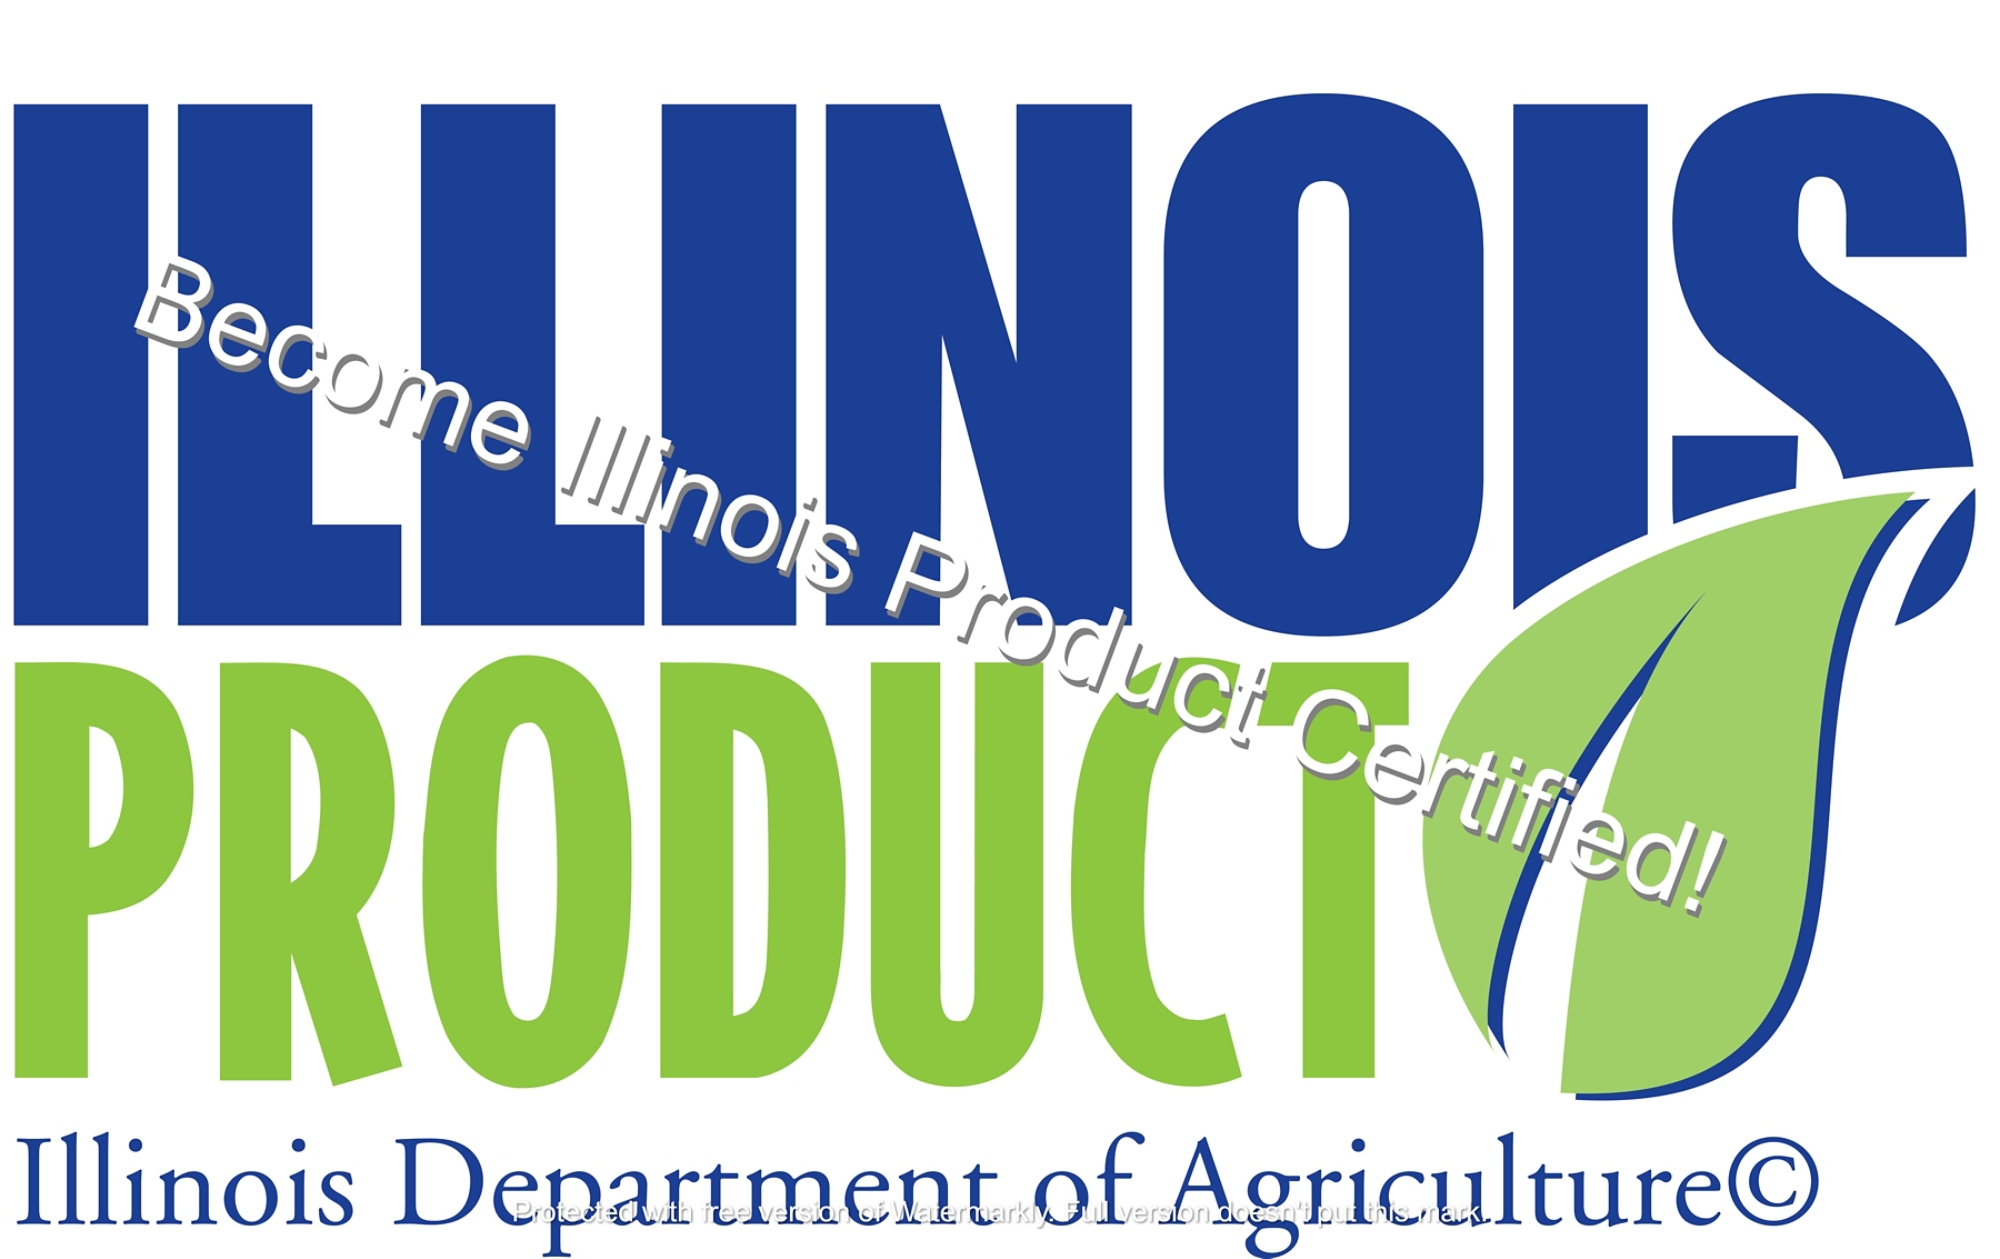 Illinois Product logo - Watermarked.jpg